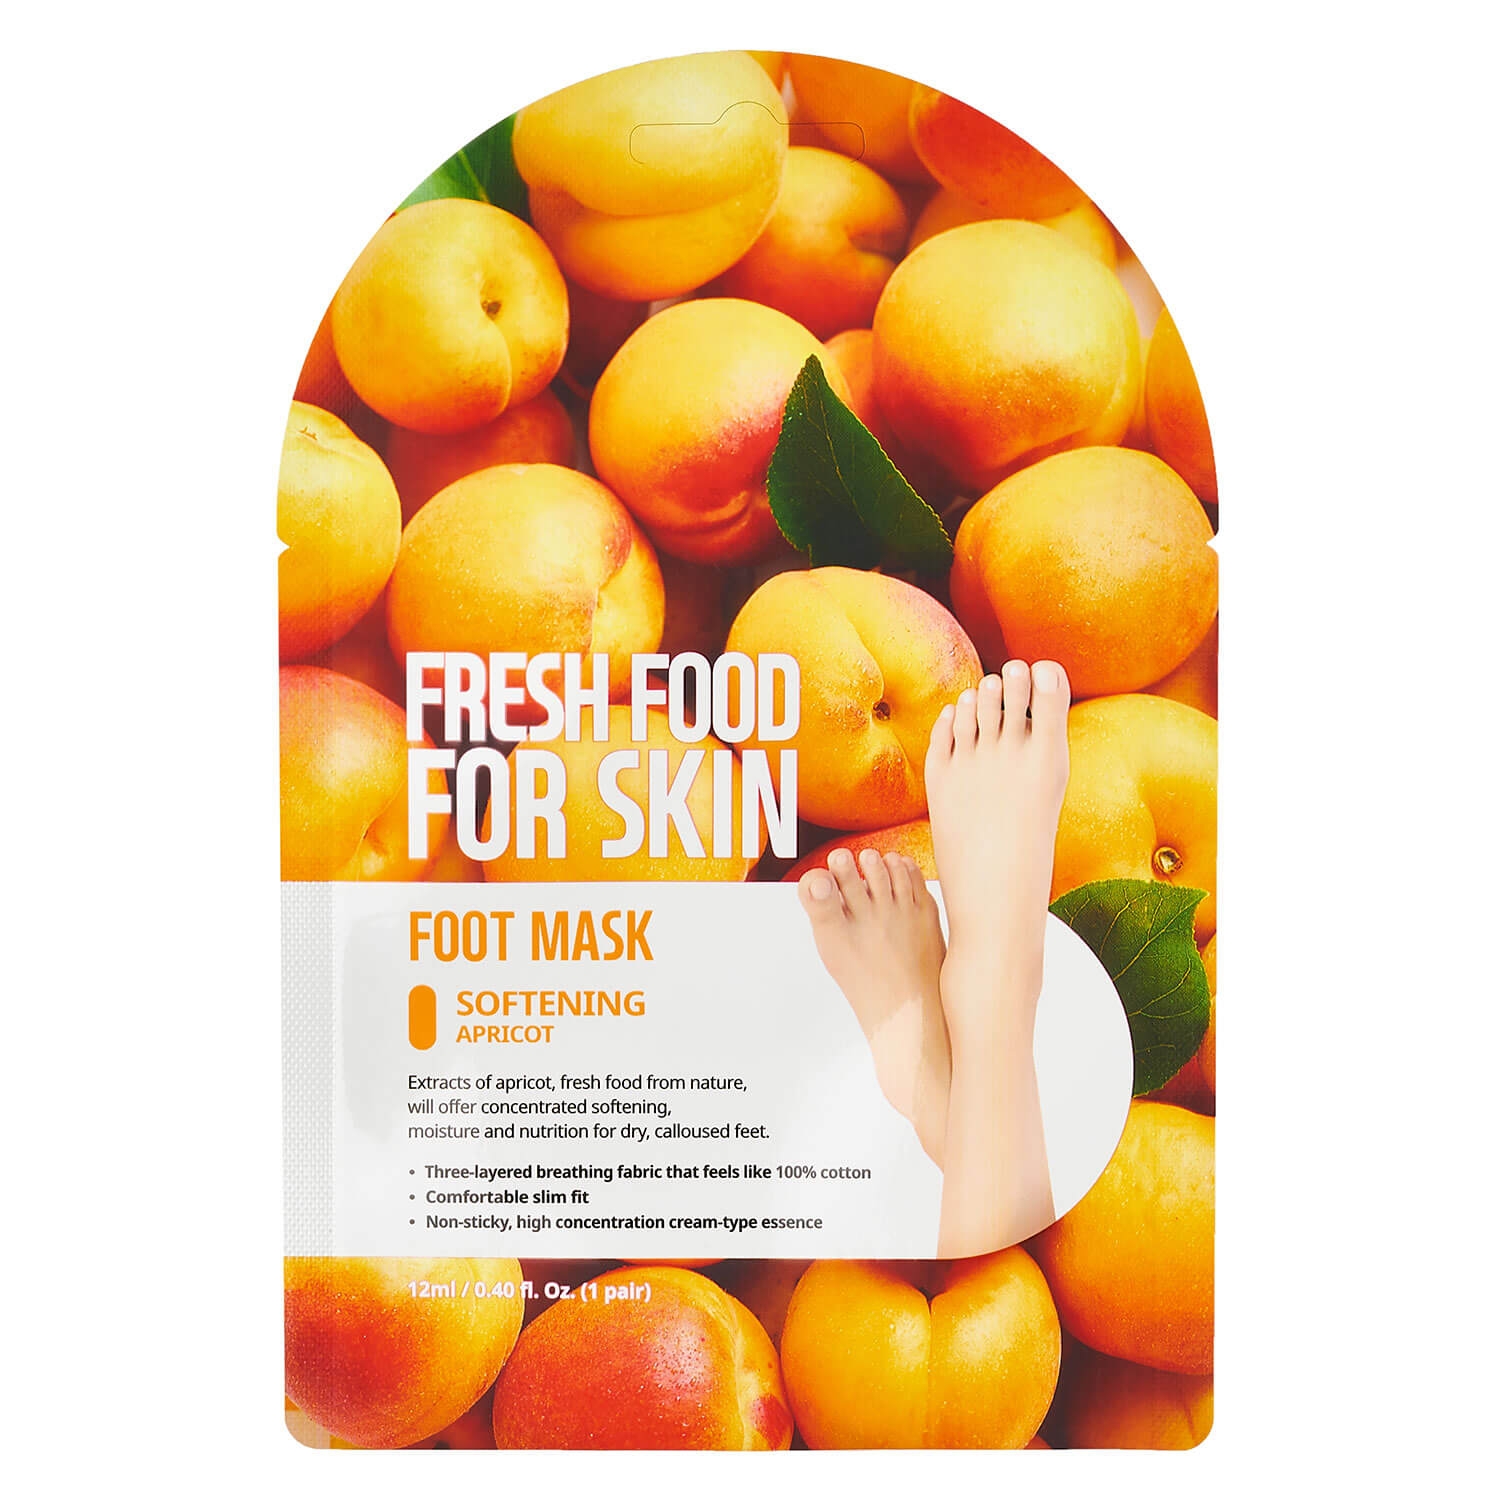 Produktbild von Fresh Food - Foot Mask Softening Apricot